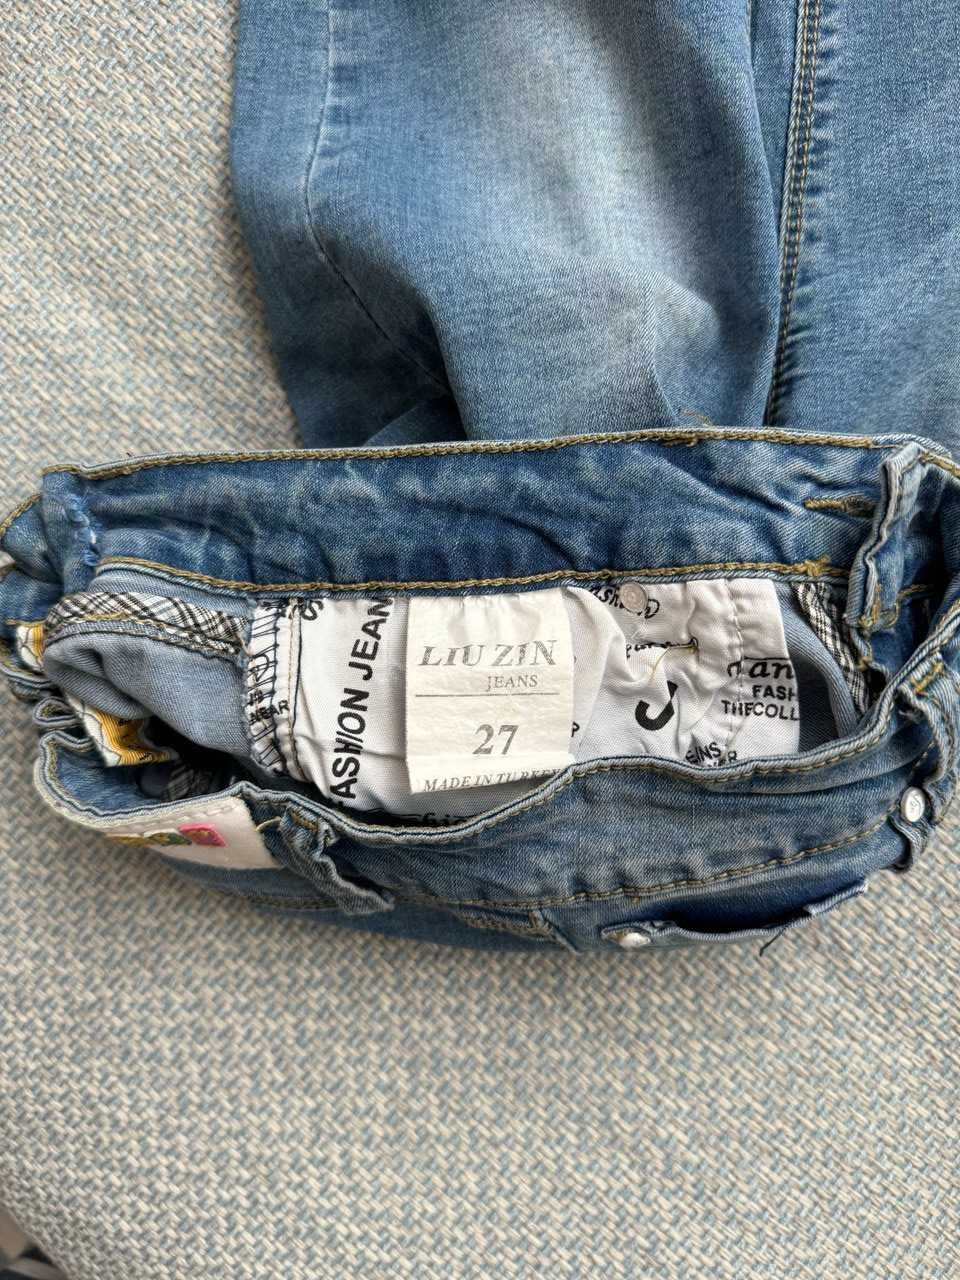 Тонкие джинс шорты на 7-9 лет, длина от пояса и до низа 49см, 27размер